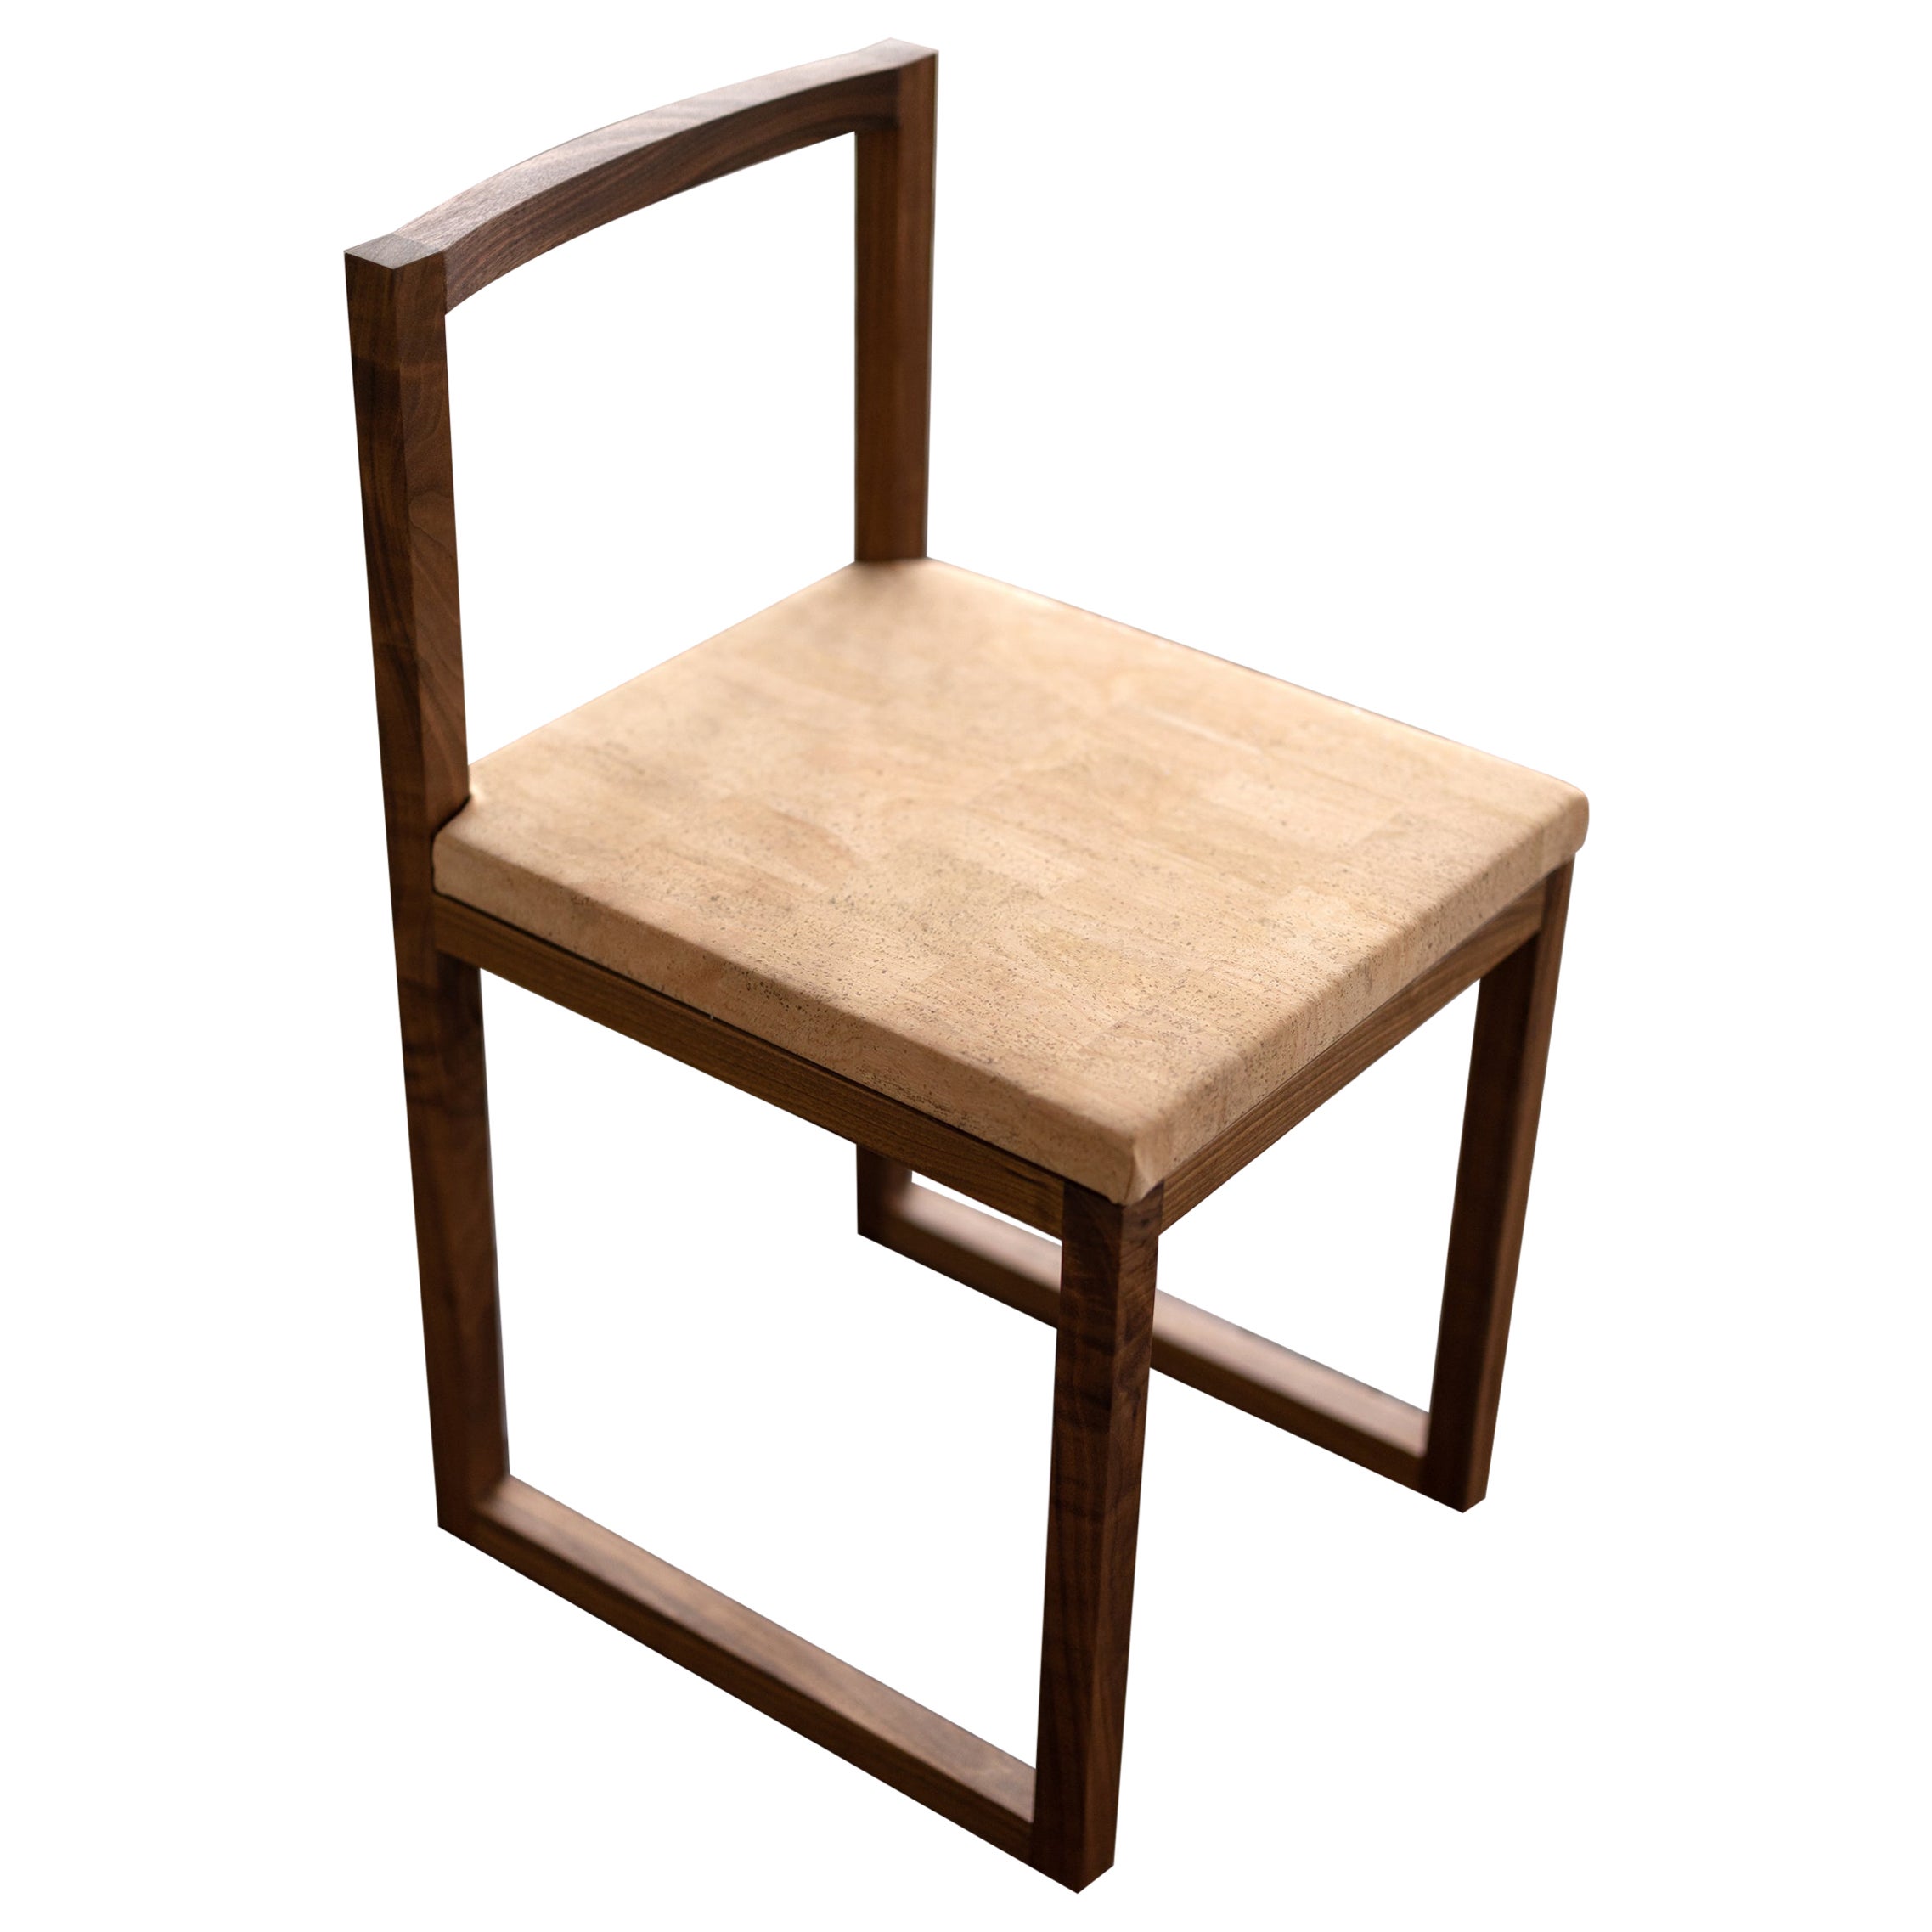 Stuhl aus Walnussholz und Kork, Stuhl für den Ess- oder Schreibtisch, Stuhl Porto